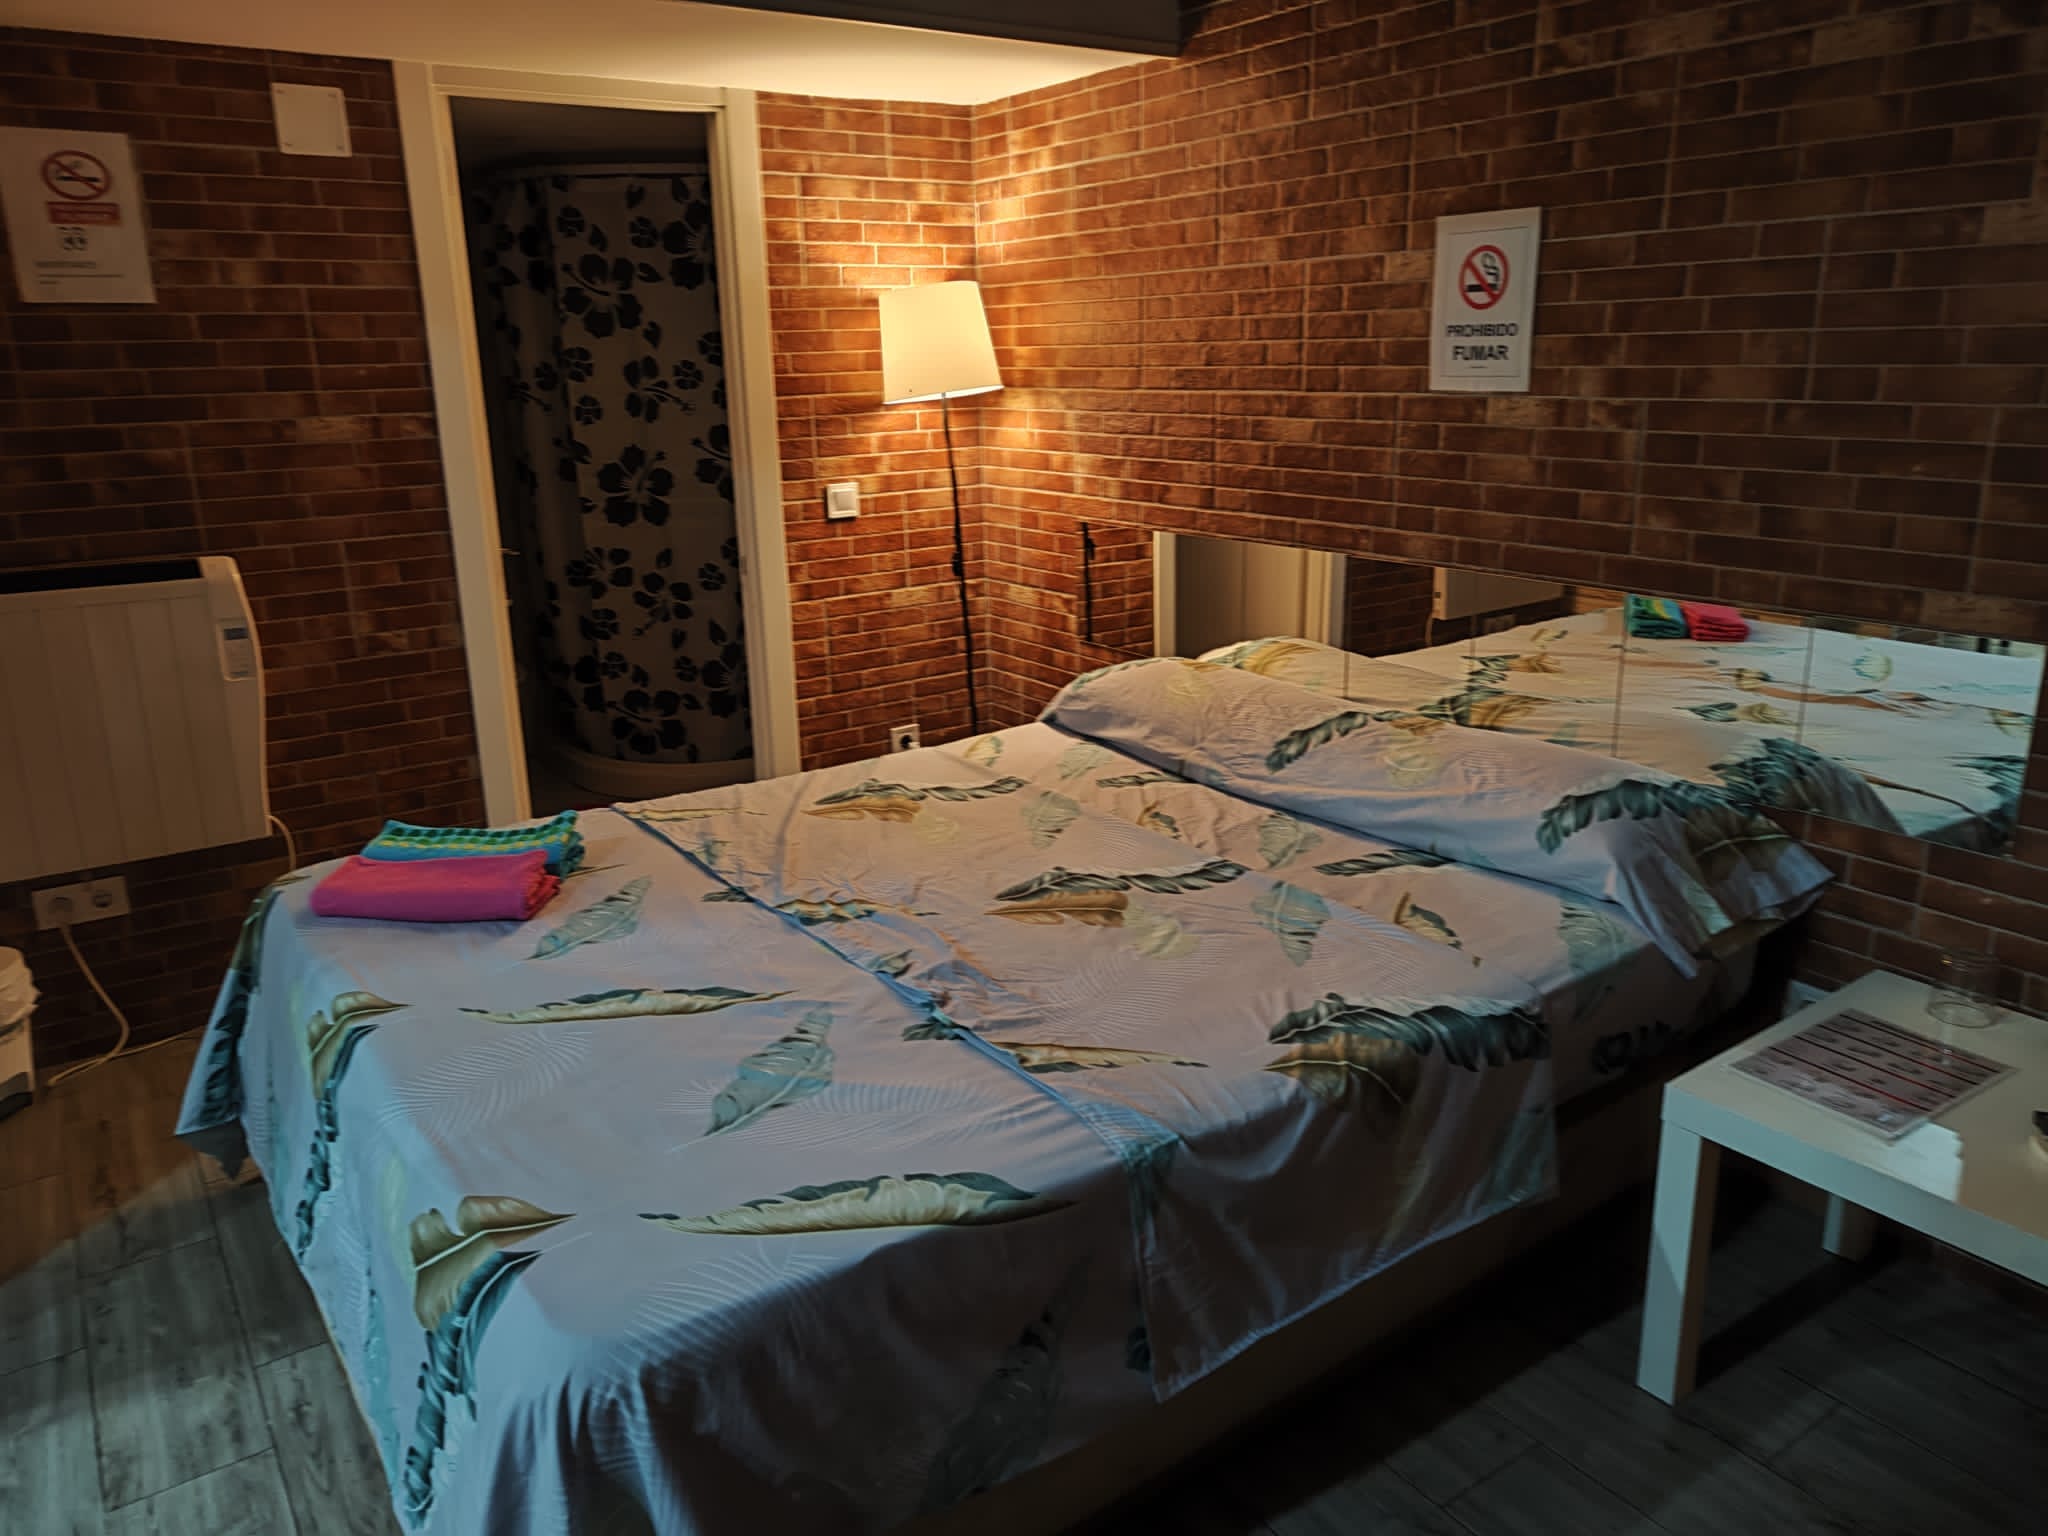 Portazgo Rooms Madrid habitacion a ladrillo visto con cama de sabanas blancas